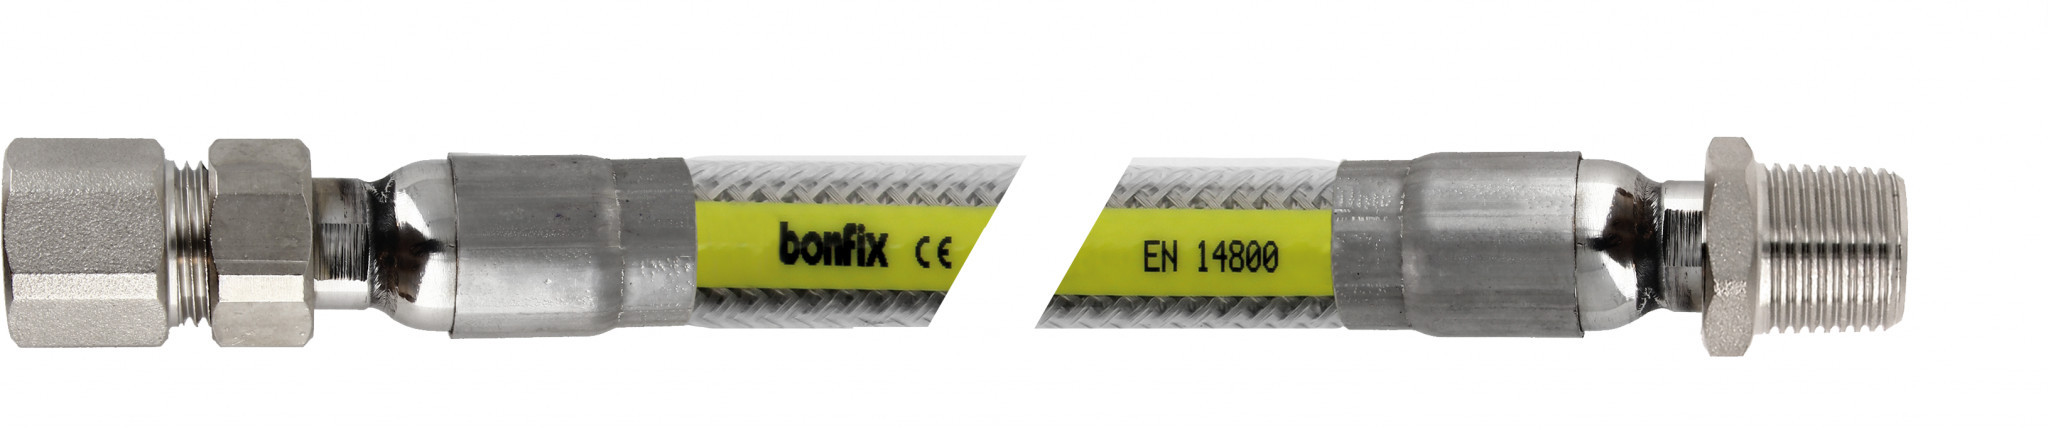 Bonfix Inox gasflexibels voor België Superieure RVS gasslang 50 cm - 1/2 binnendraad x 1/2 buitendraad